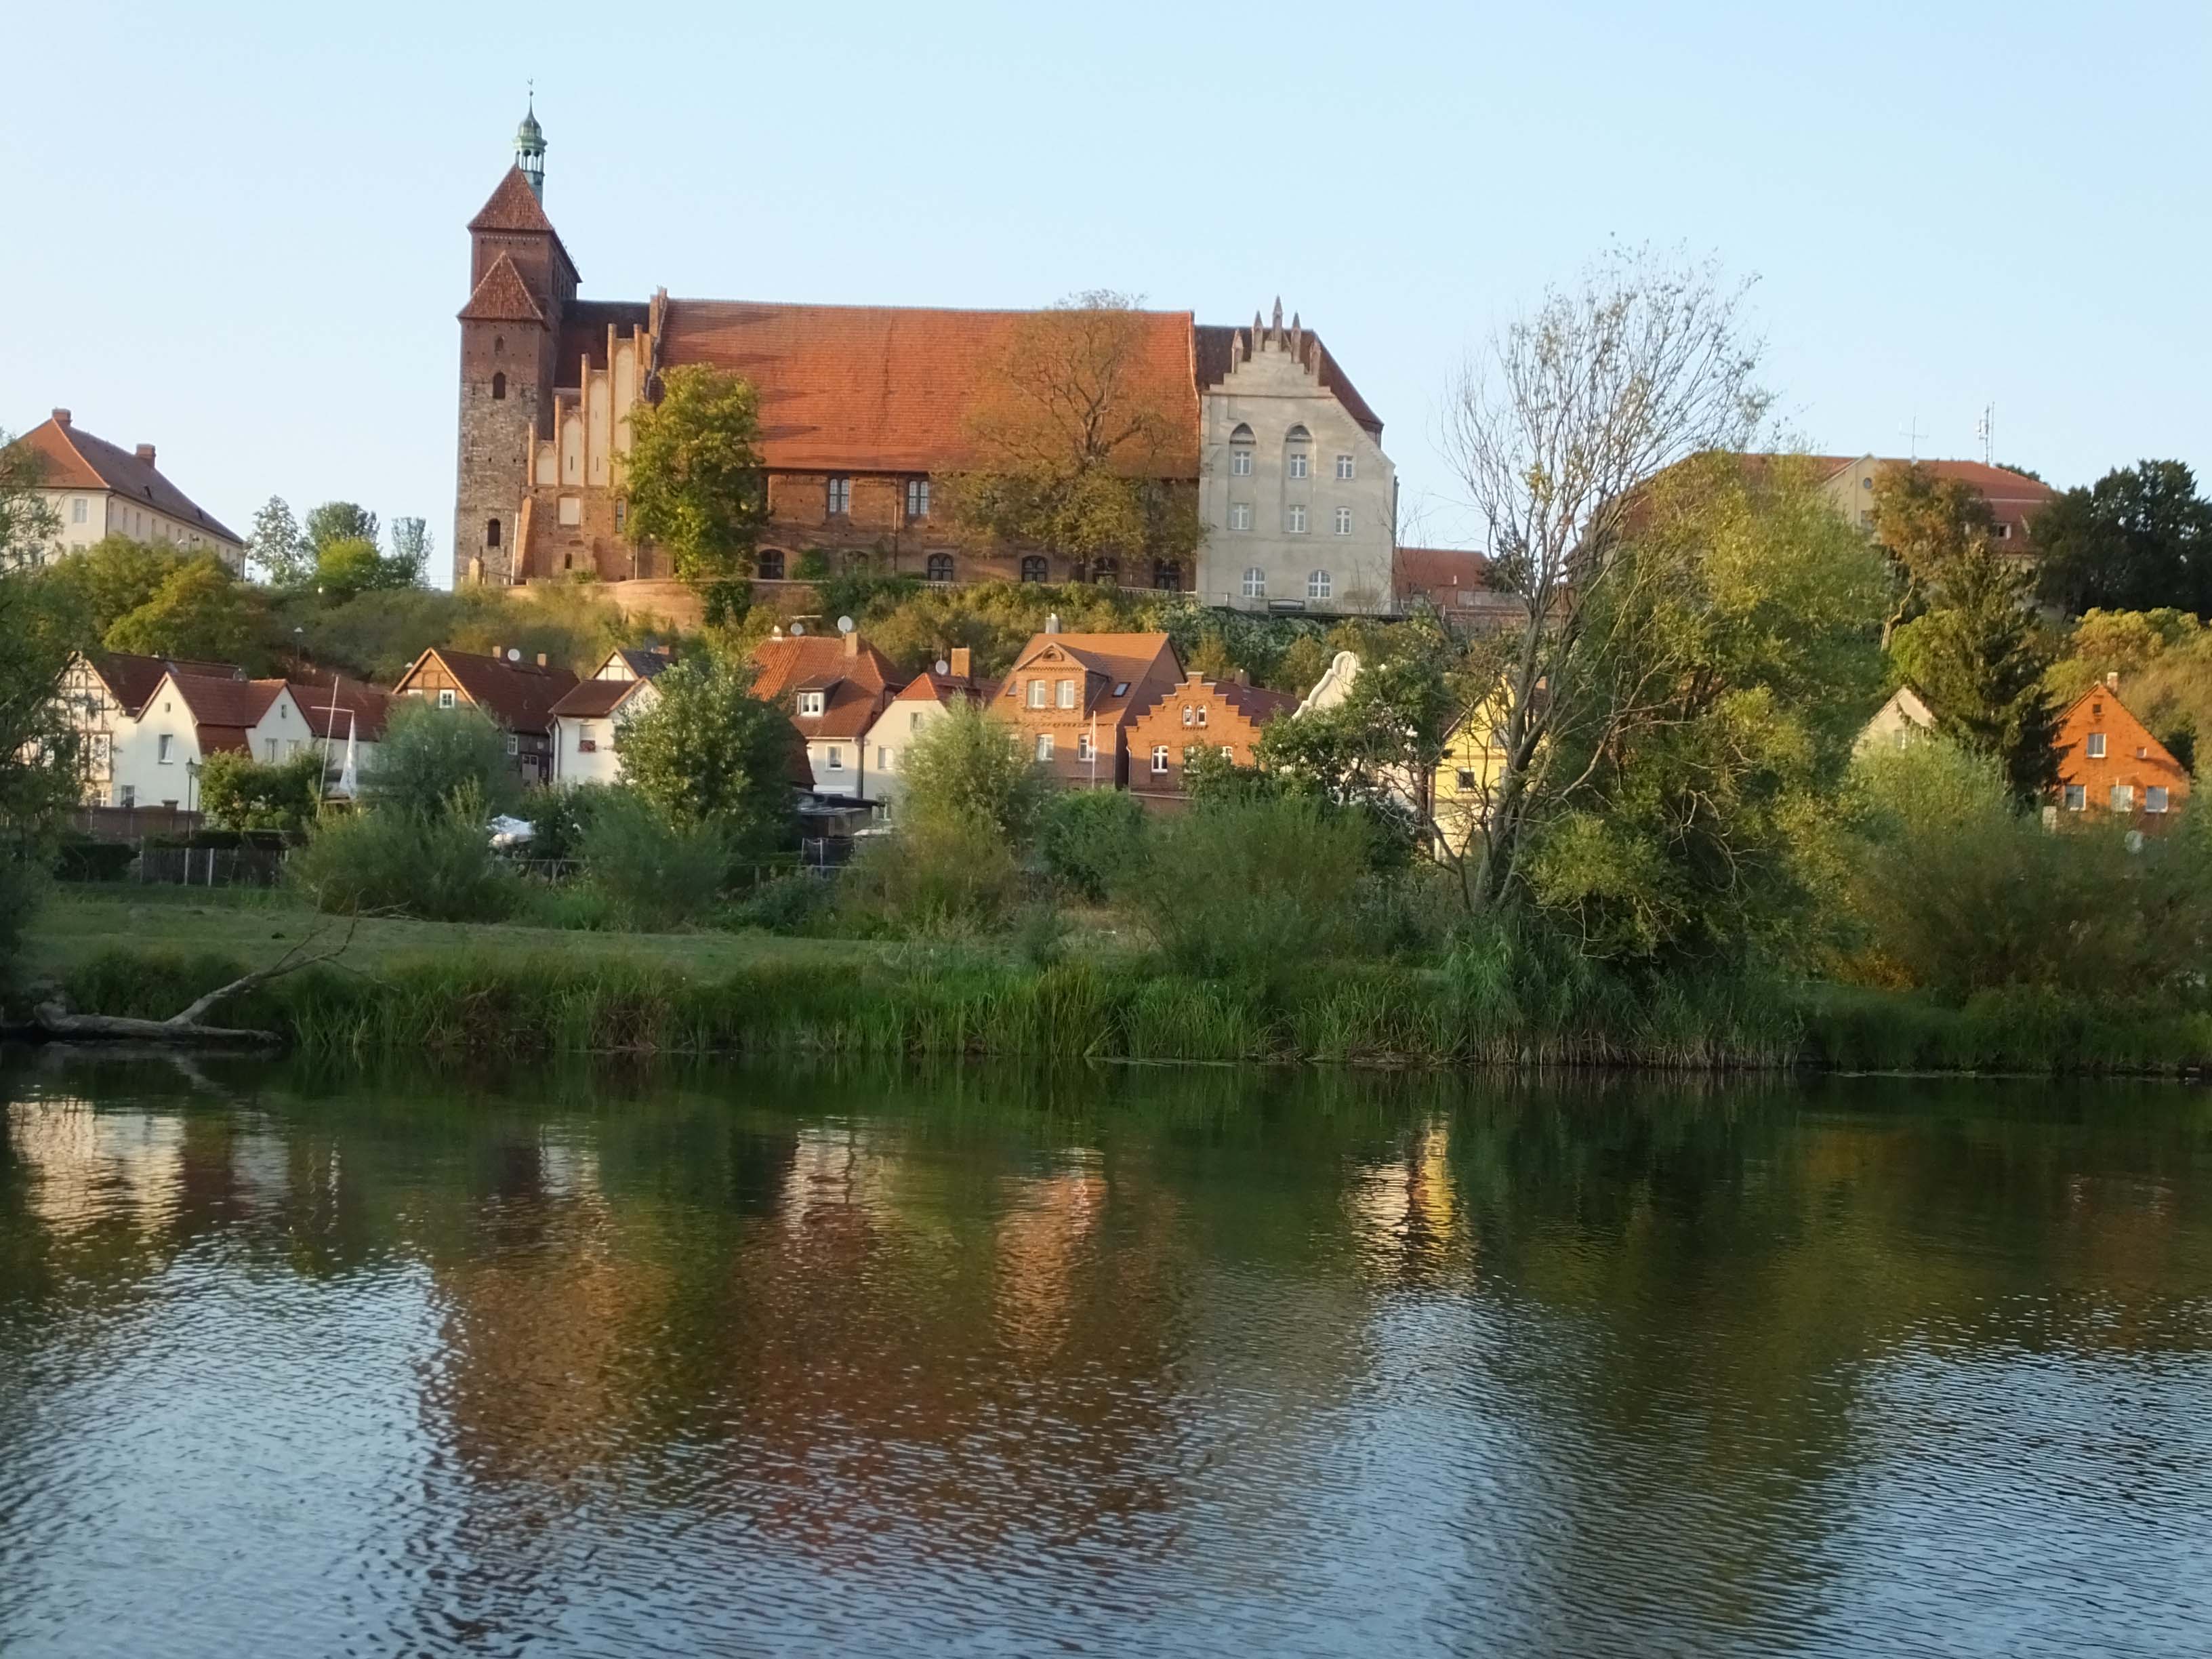 Die von Wasser umgebene Stadt Havelberg gilt als "Wiege der Prignitz". Im Hintergrund der Dom St. Marien.

